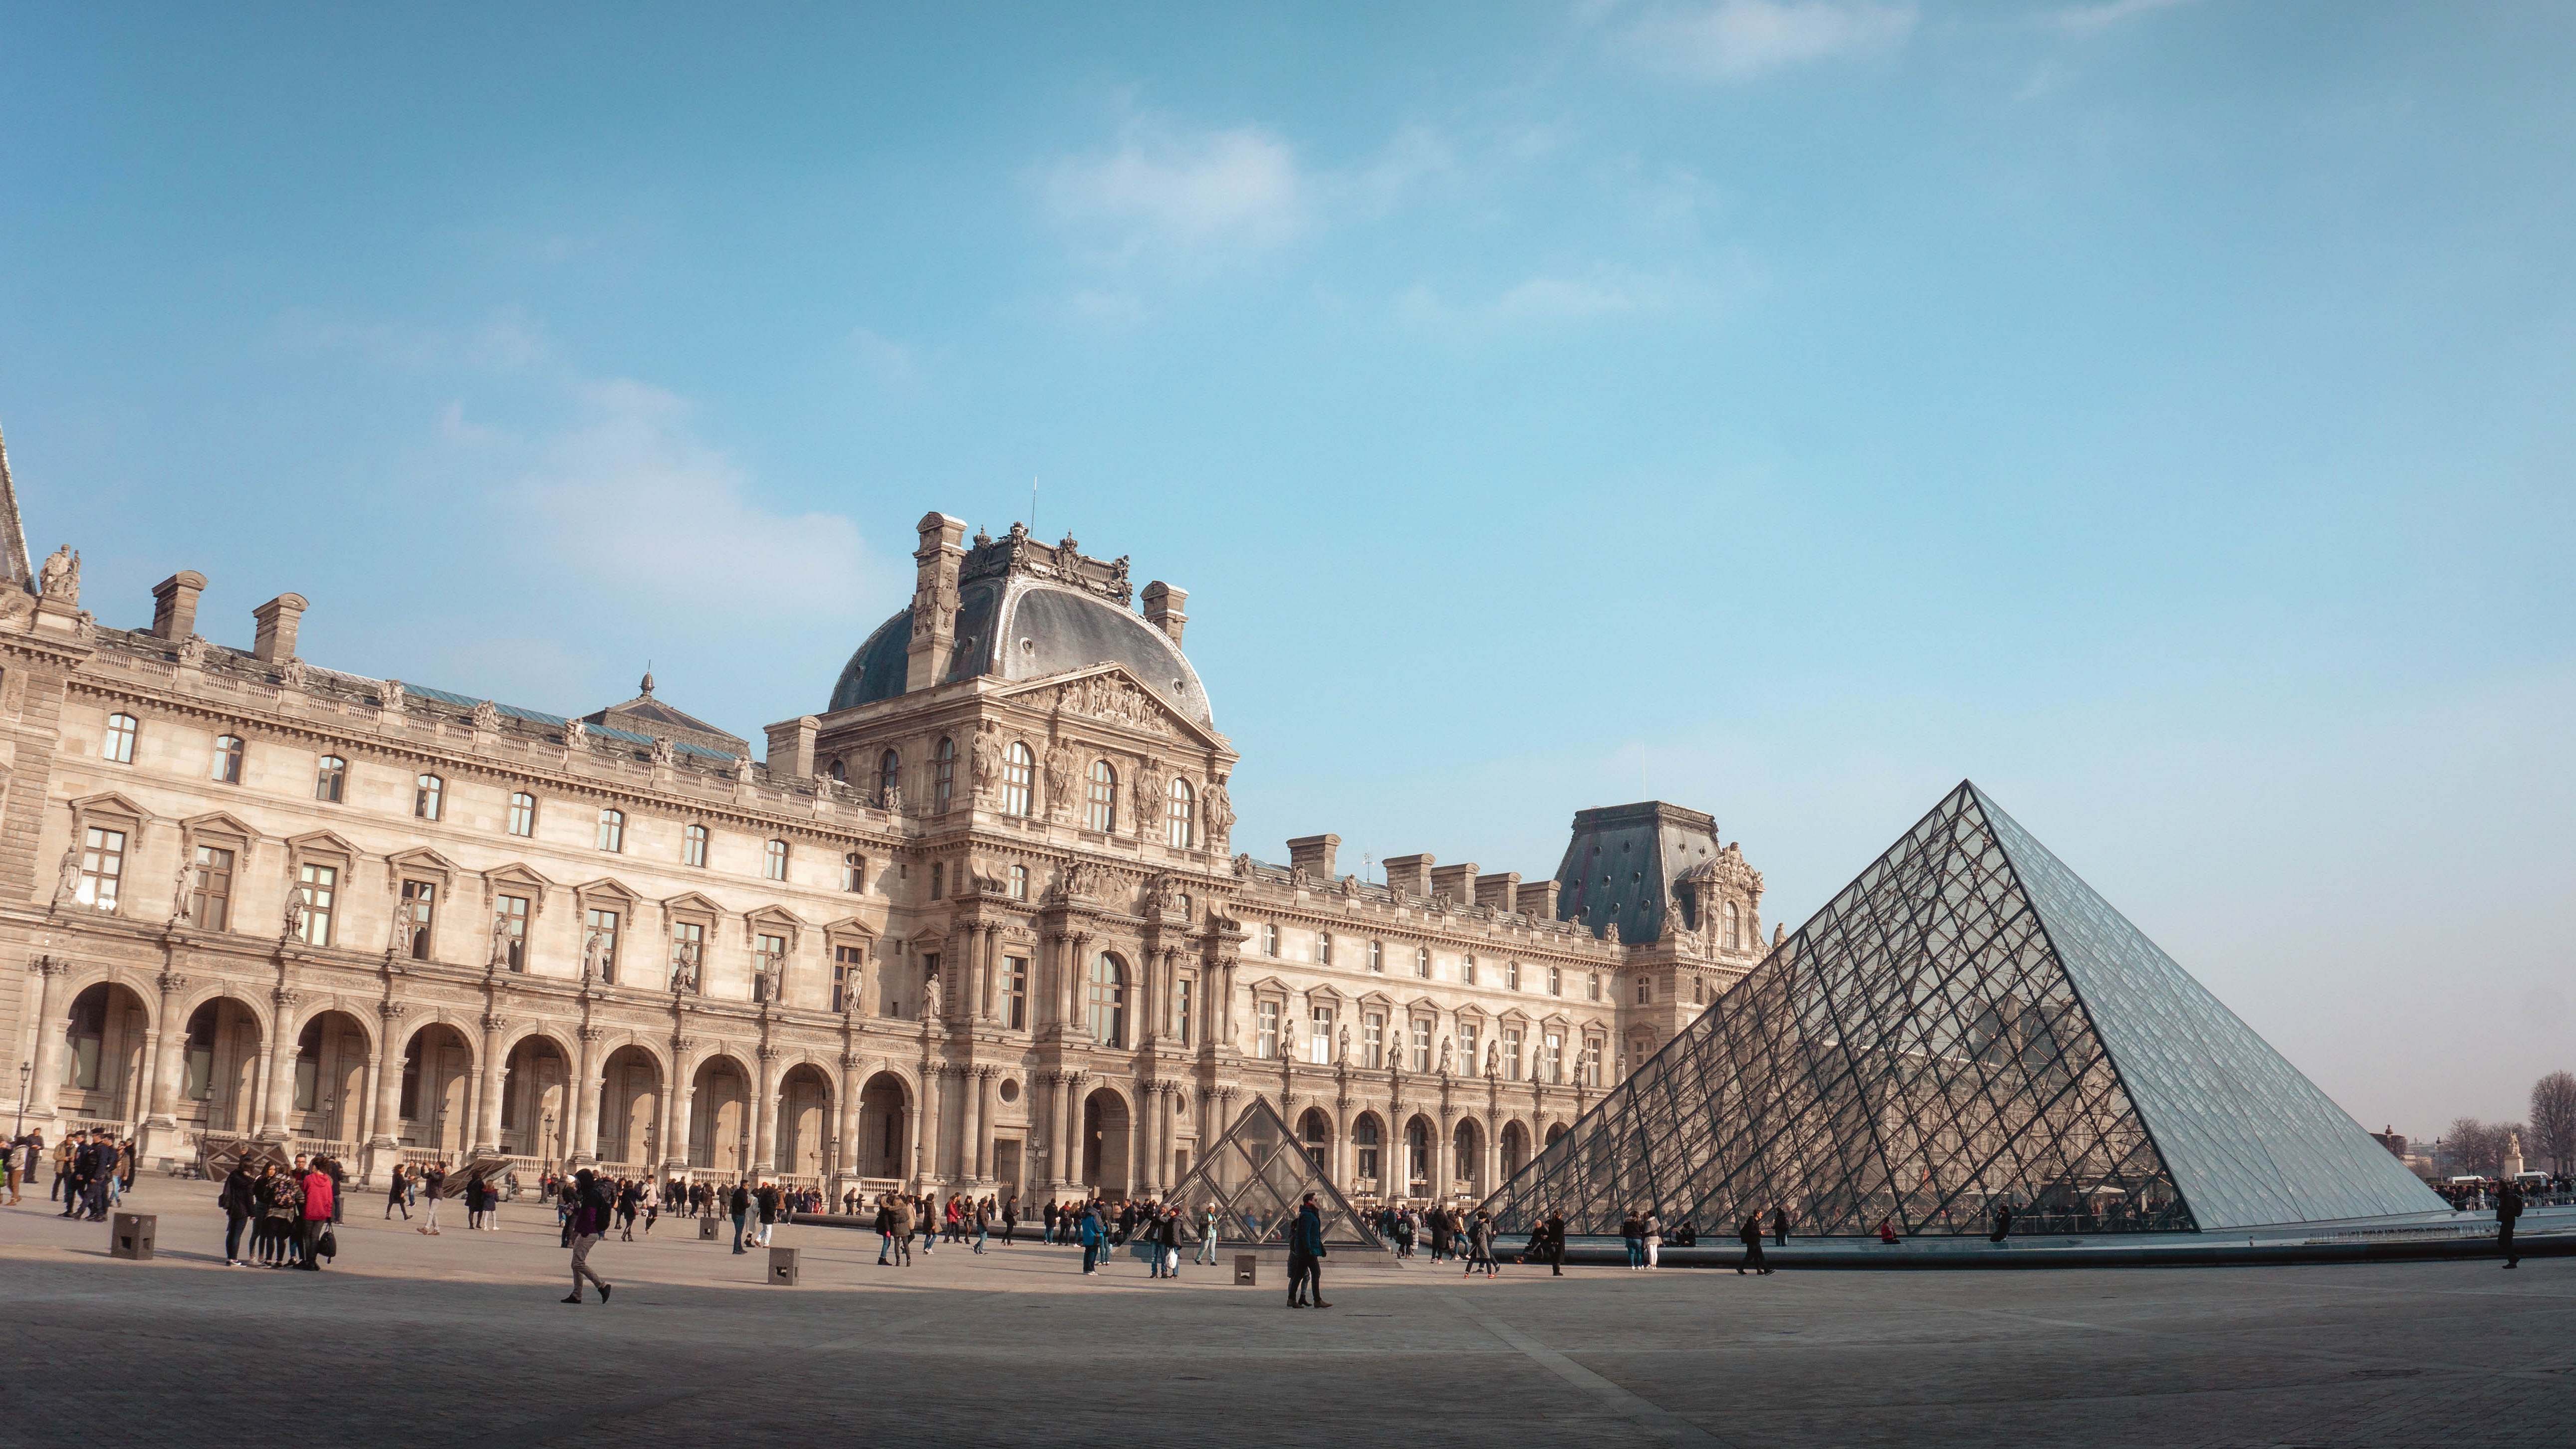 Architecture Louvre Museum, Paris Building Image Free Photo